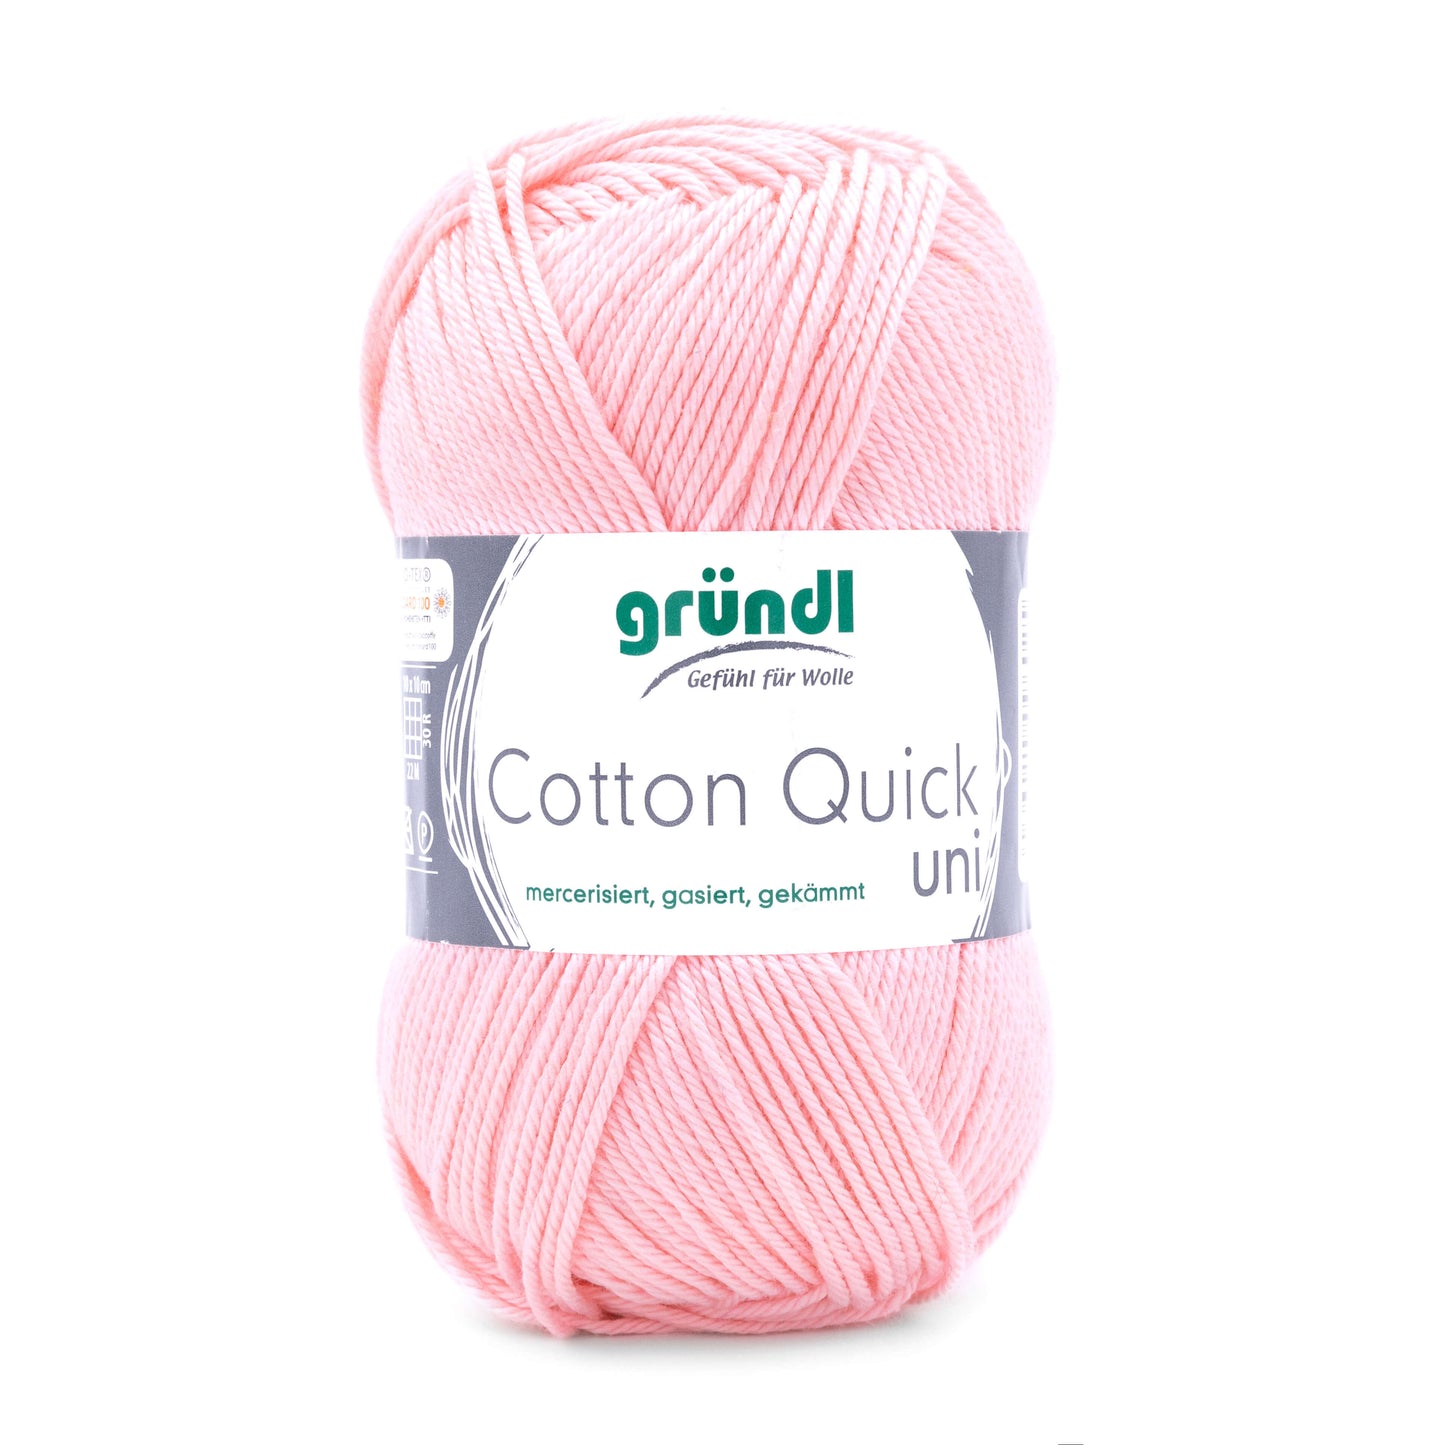 Gründl Cotton Quick uni 100 % Baumwolle (mercerisiert, gasiert, gekämmt)